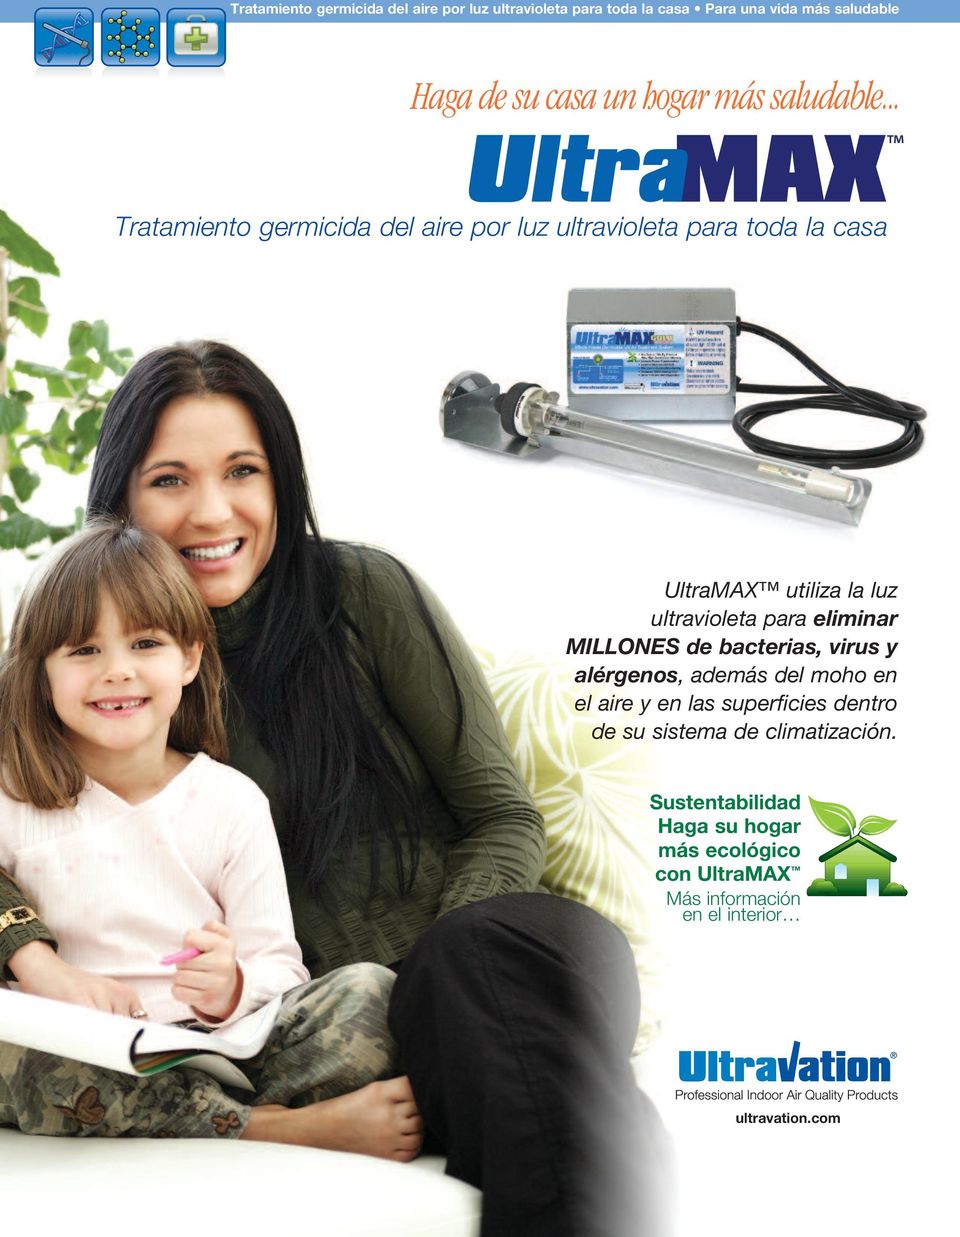 .. Tratamiento germicida del aire por luz ultravioleta para toda la casa UltraMAX utiliza la luz ultravioleta para eliminar